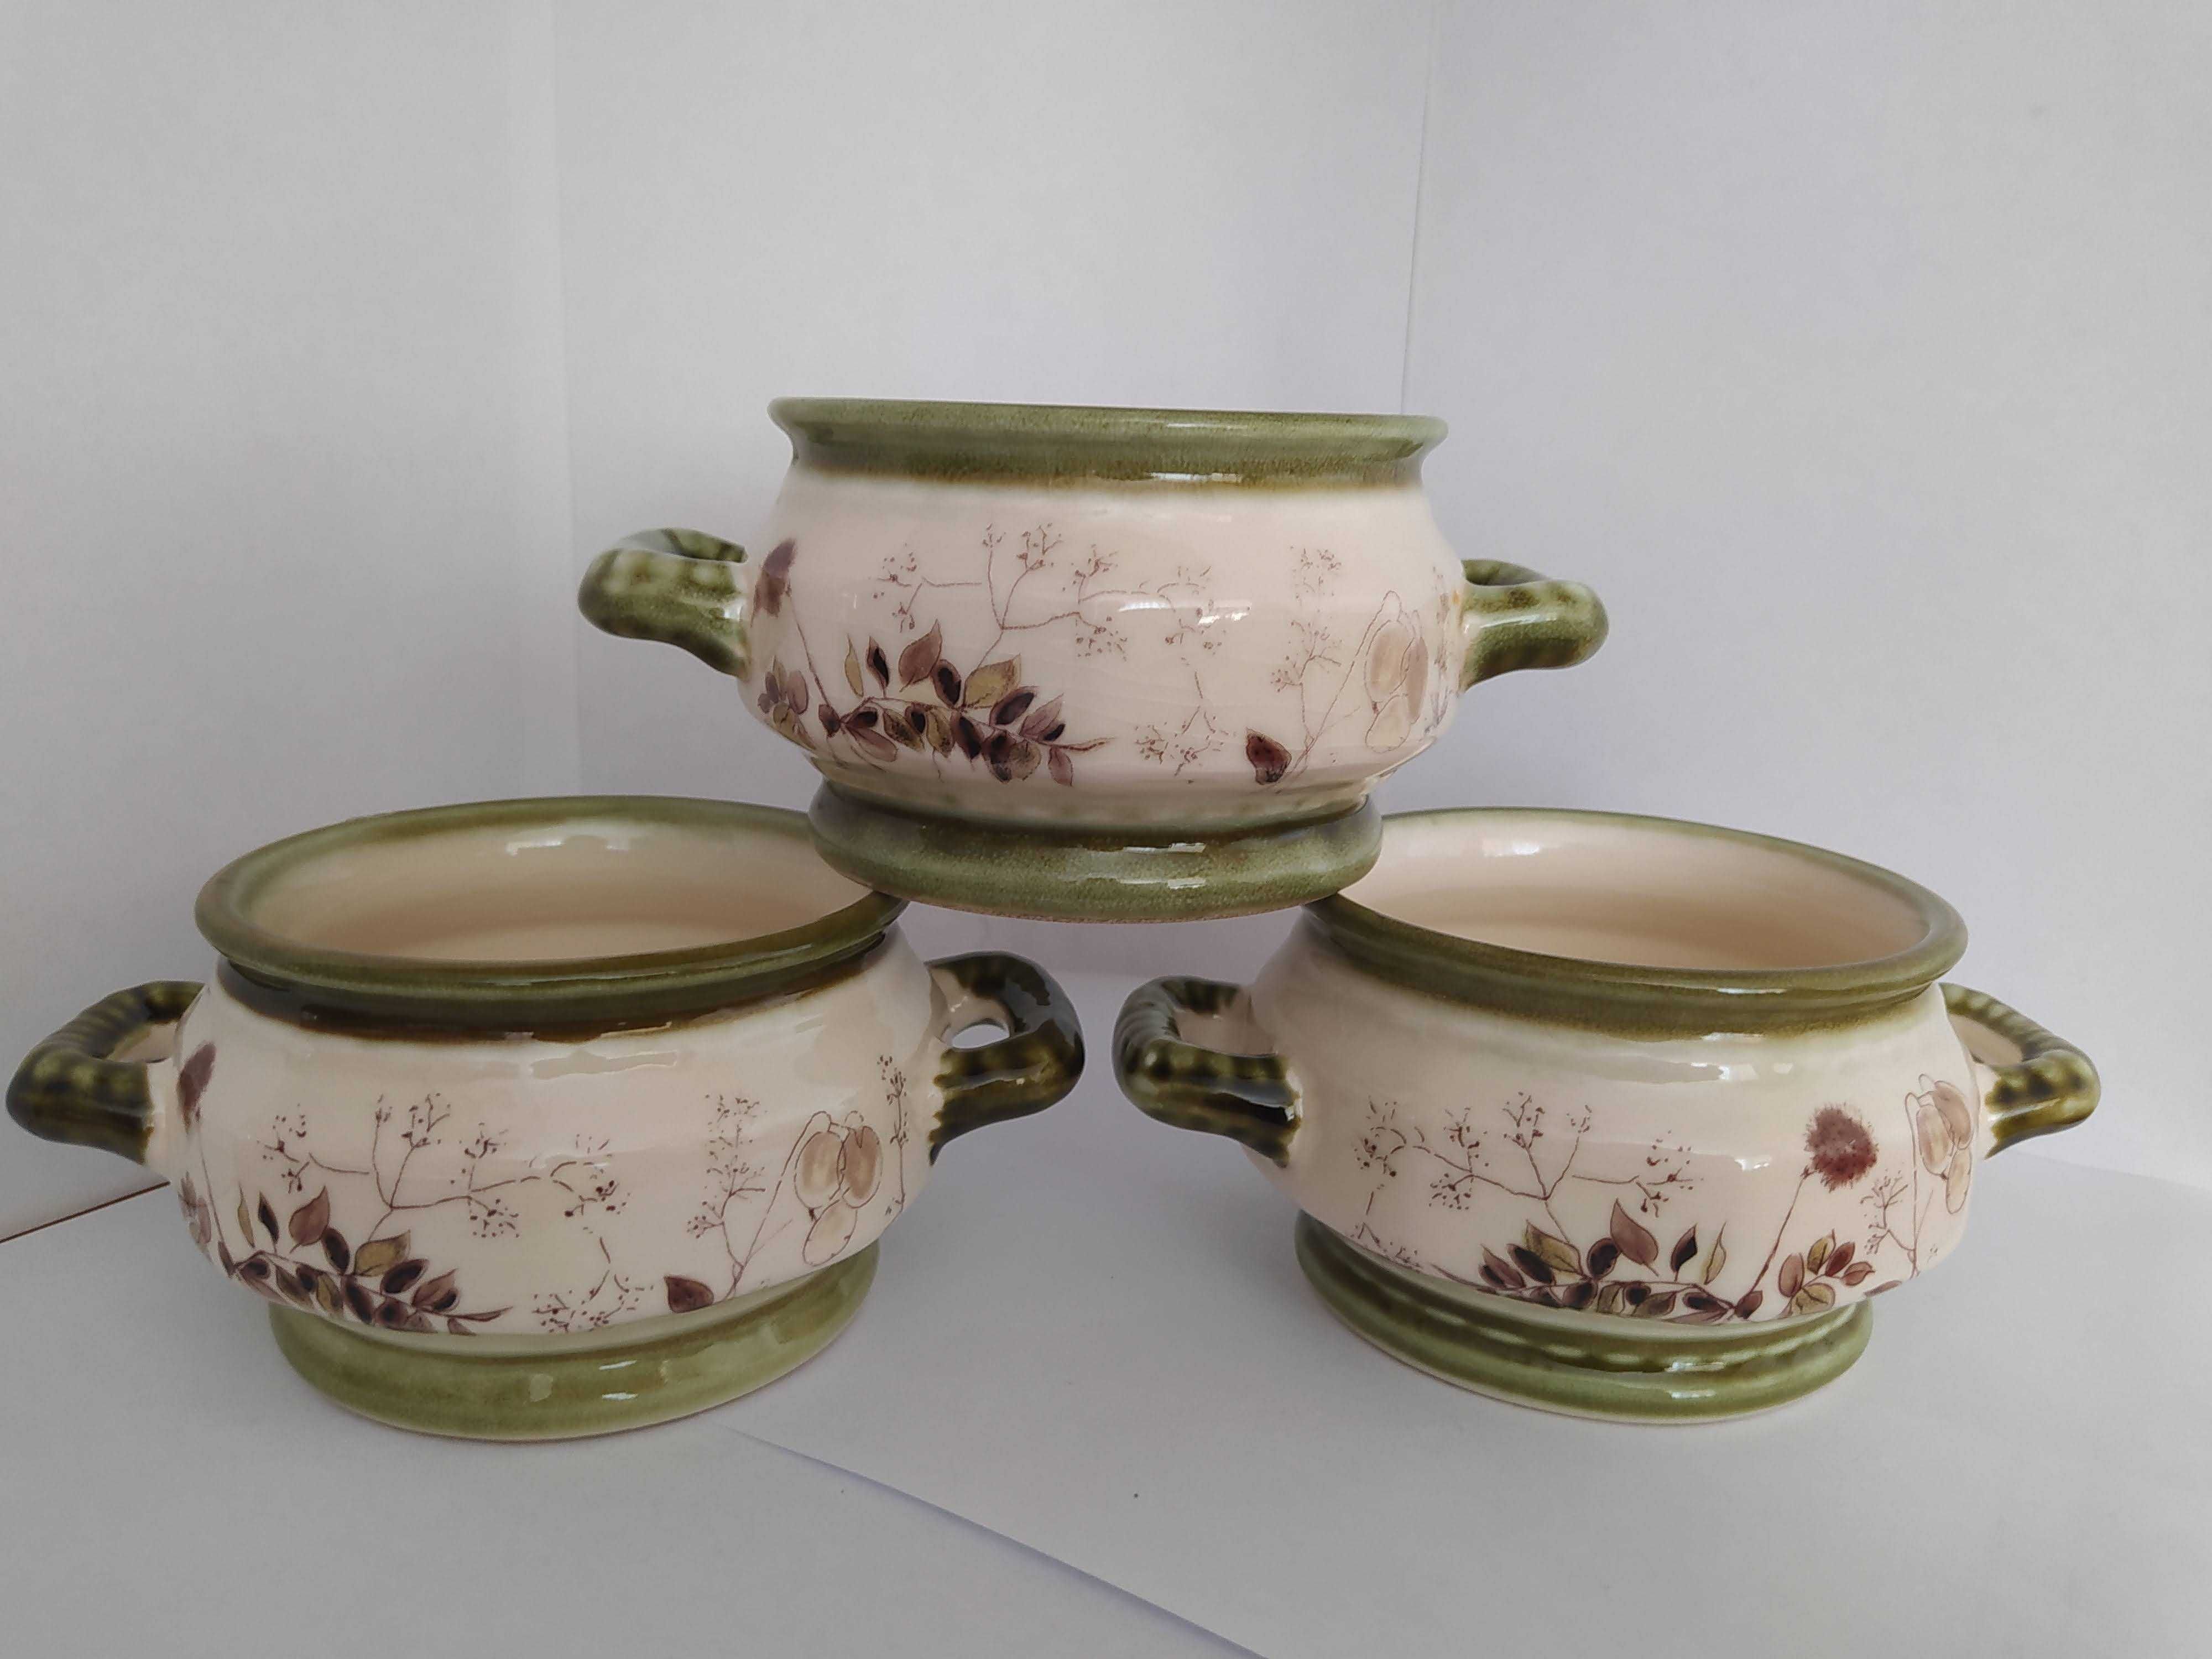 Zestaw Zeller Keramik Niemcy ceramika filiżanki bulionówki świecznik